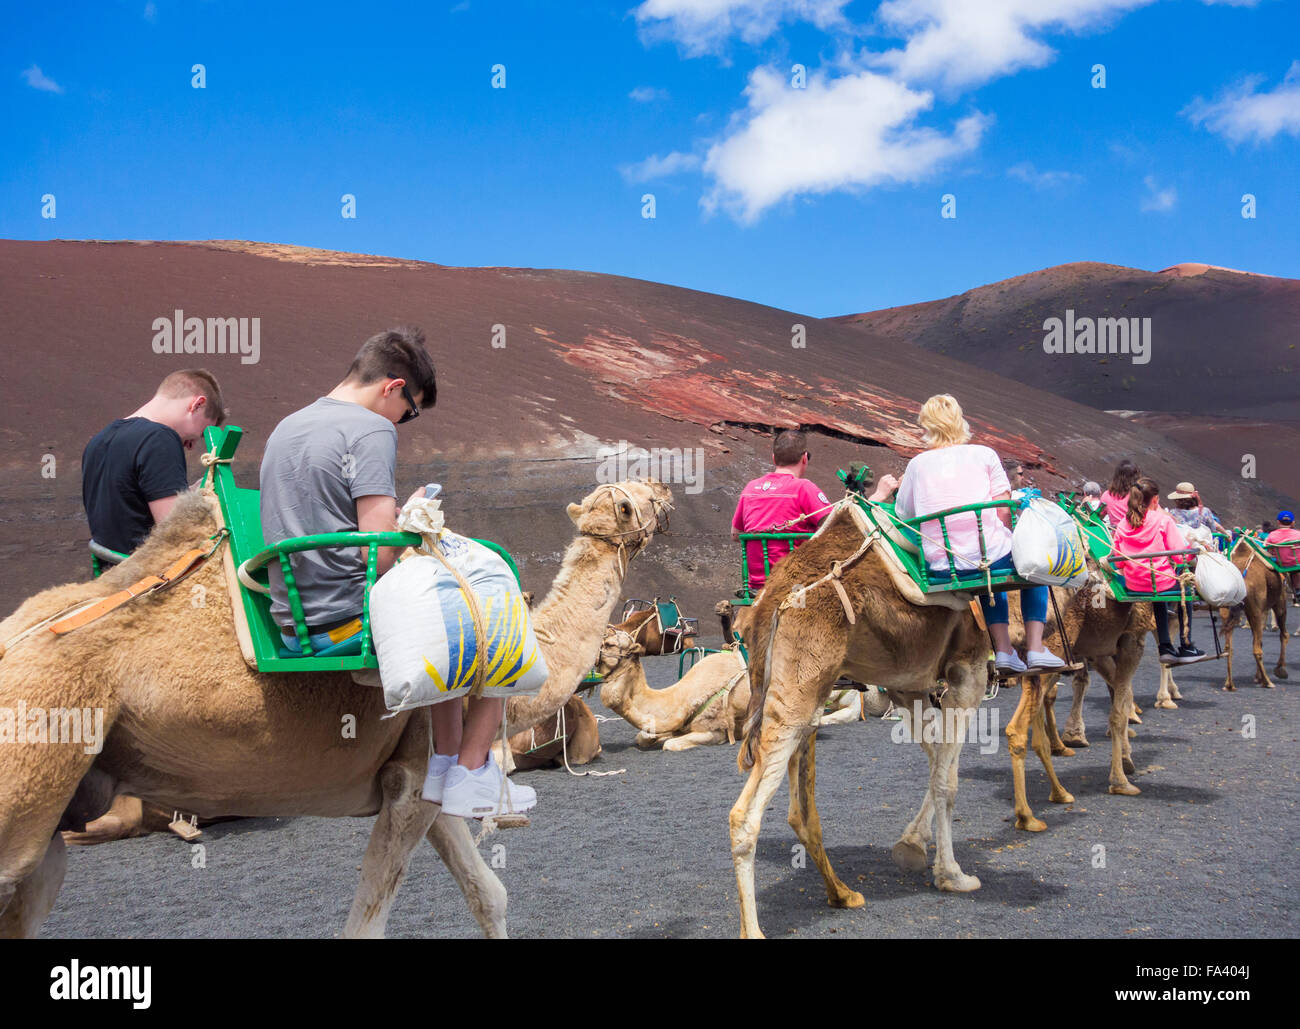 Deux adolescents à la recherche de téléphones mobiles sur camel tour dans le parc national de Timanfaya. Lanzarote, îles Canaries, Espagne Banque D'Images